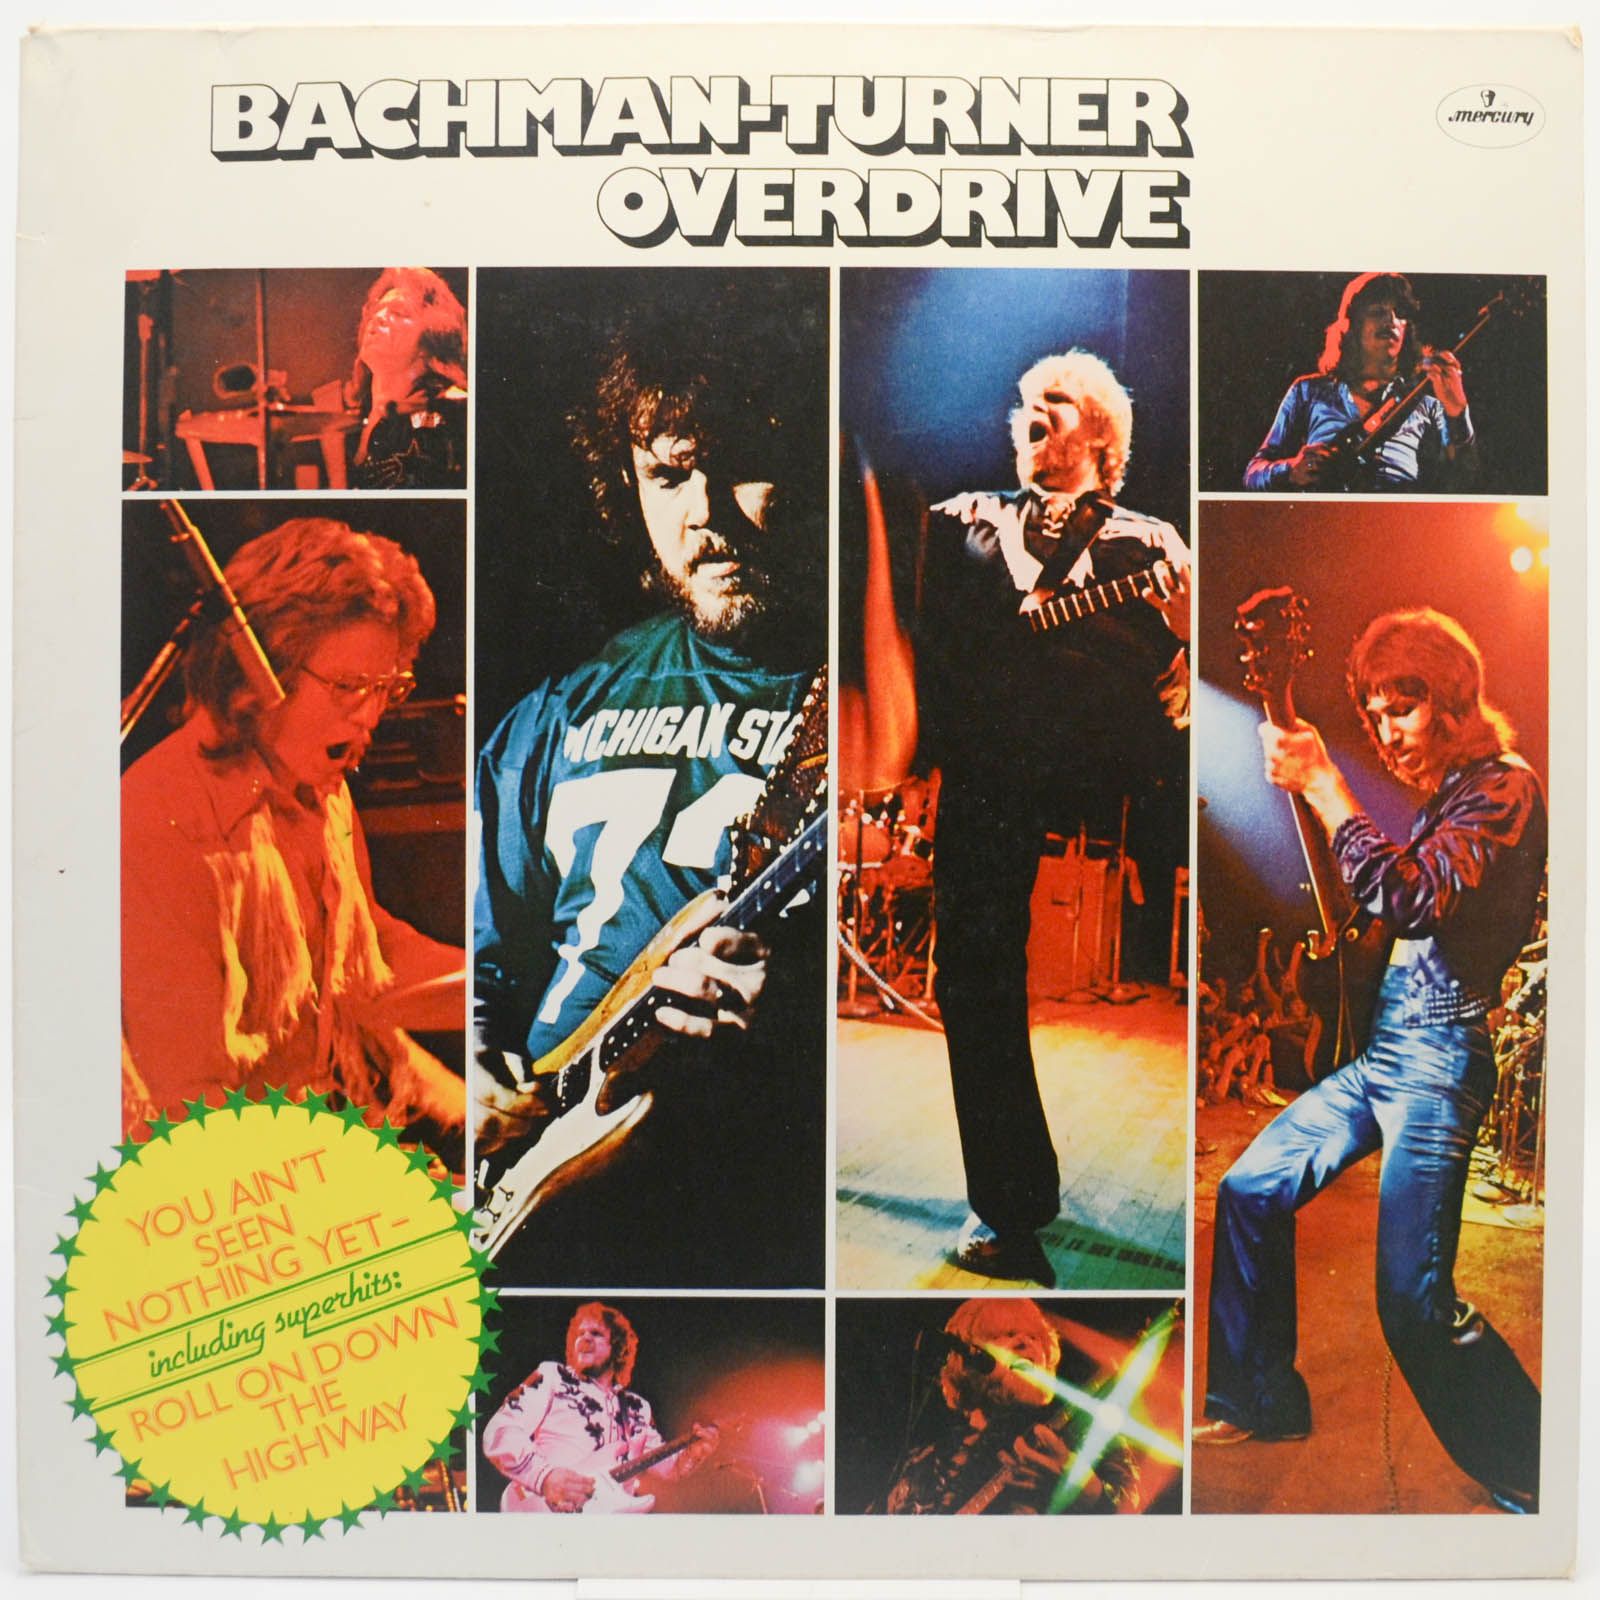 Bachman-Turner Overdrive — Bachman-Turner Overdrive, 1975